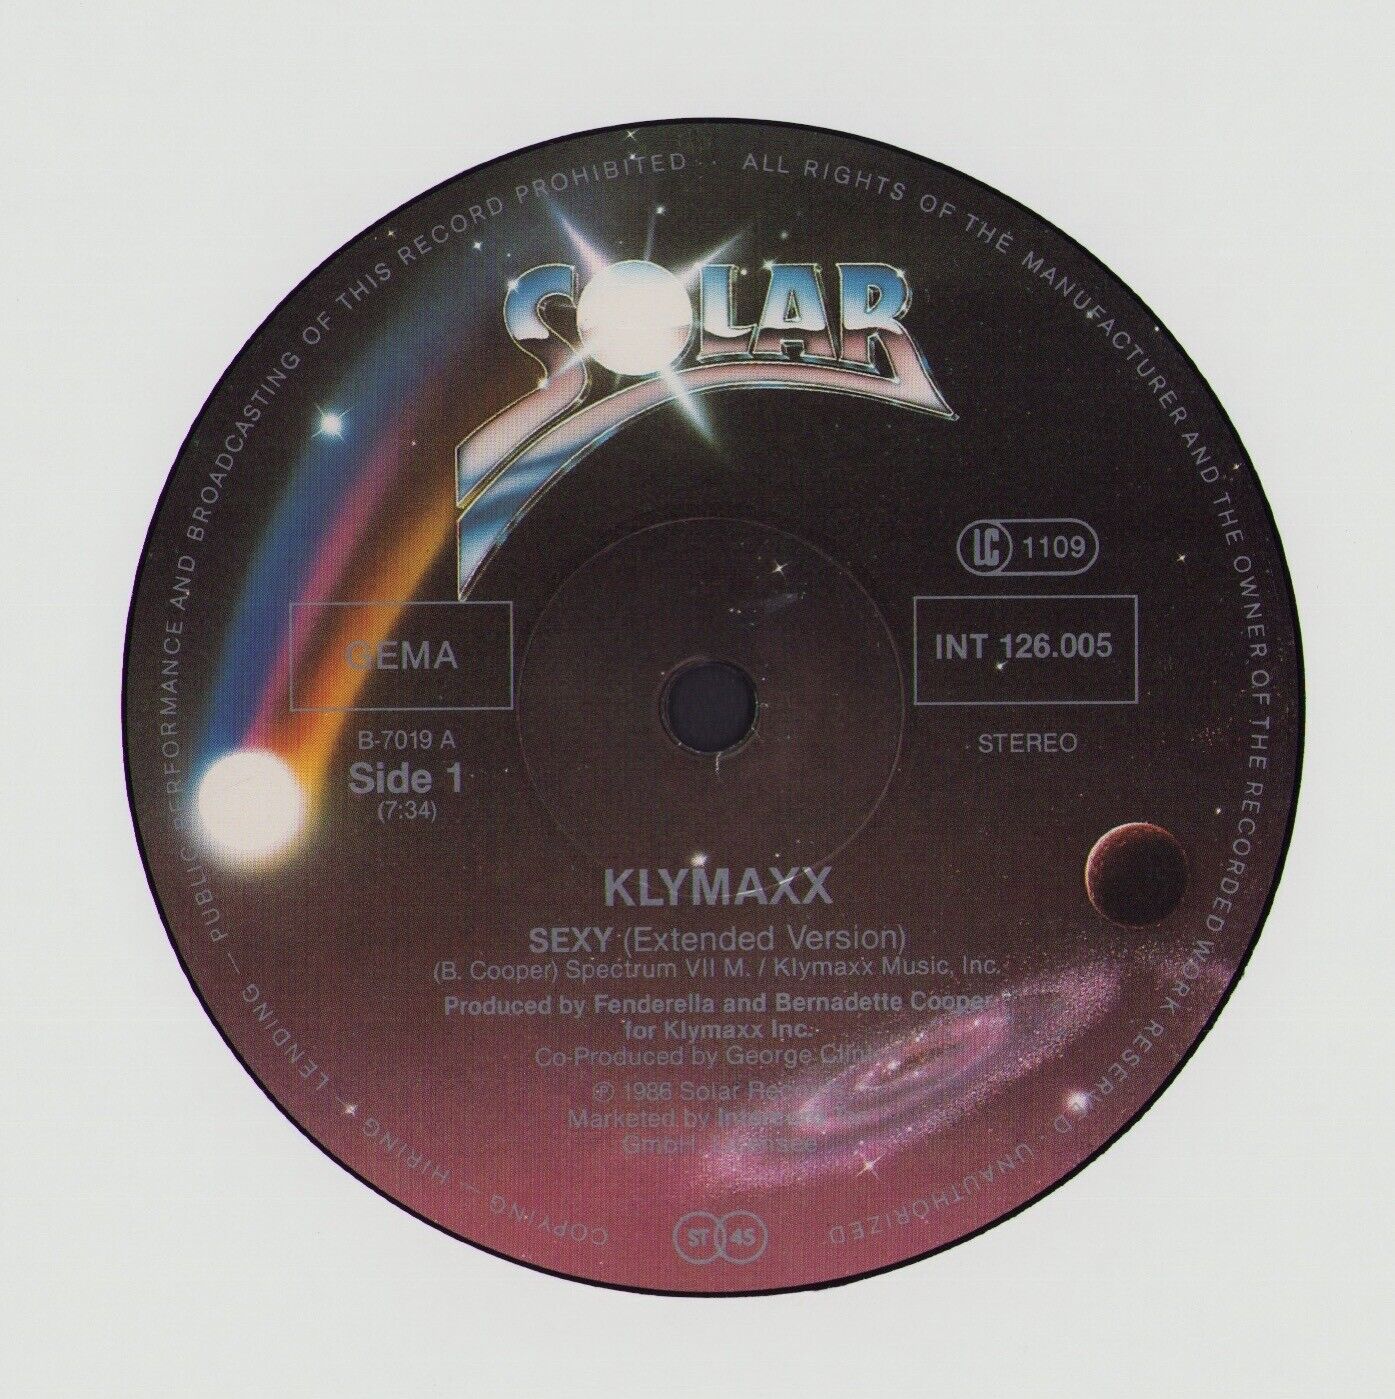 Klymaxx - Sexy Extended Version Vinyl 12"